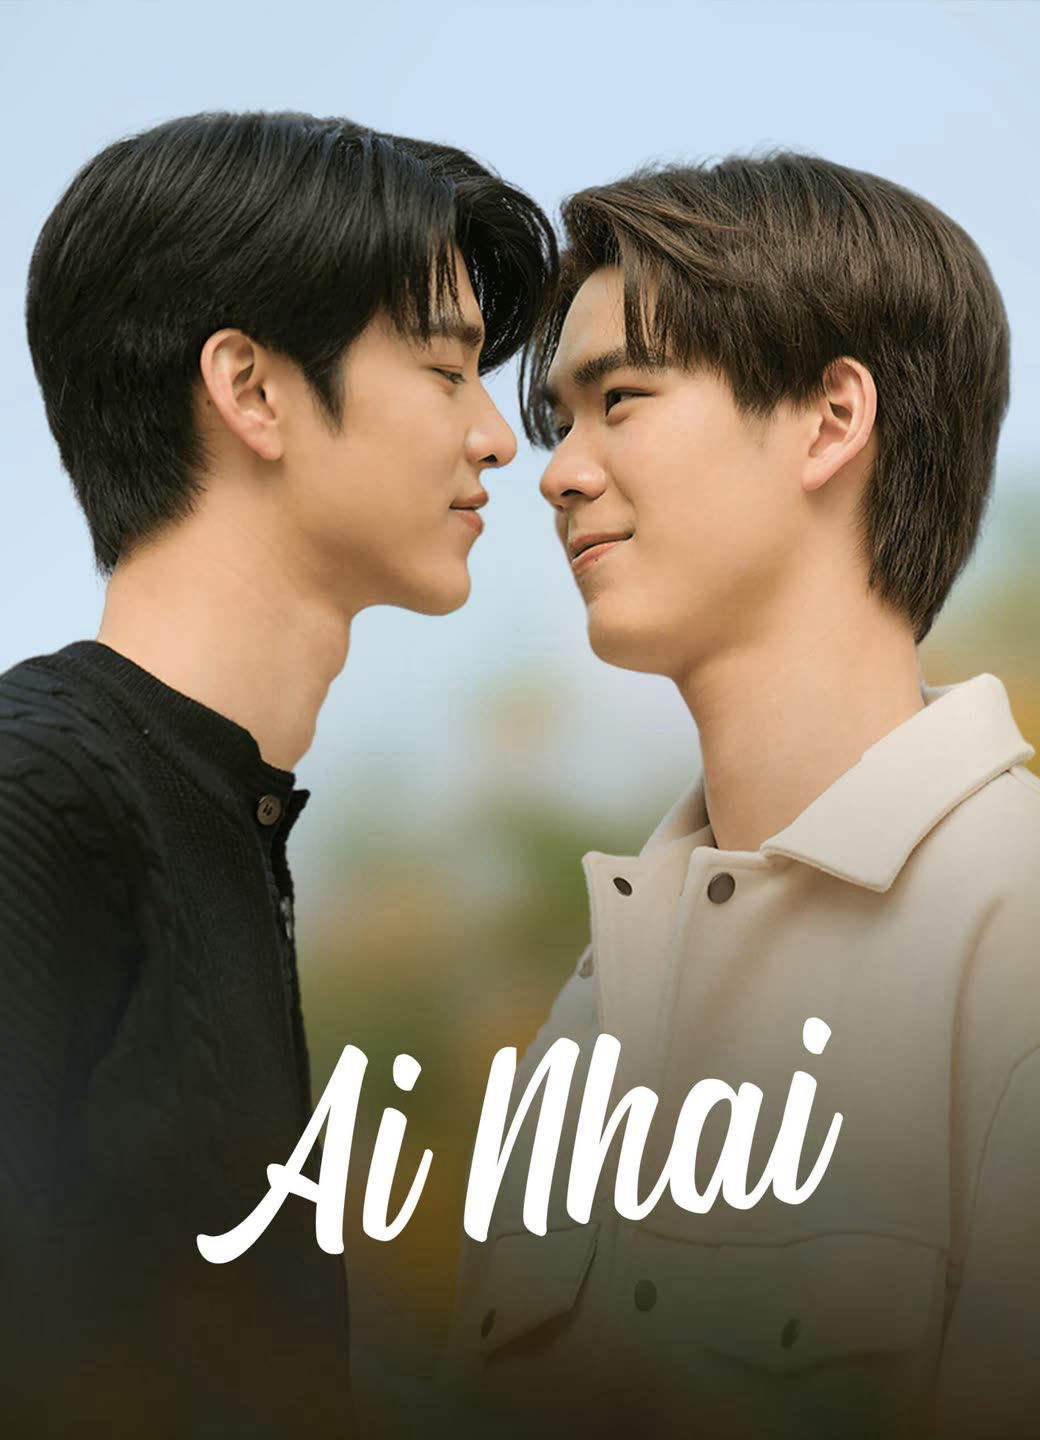 Poster Phim AiNhai (AiNhai)